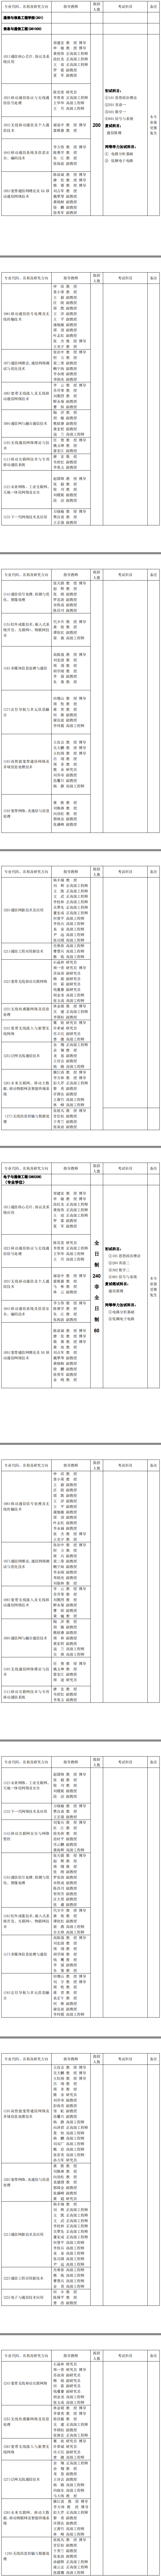 重庆邮电大学通信与信息工程学院2019考研专业目录